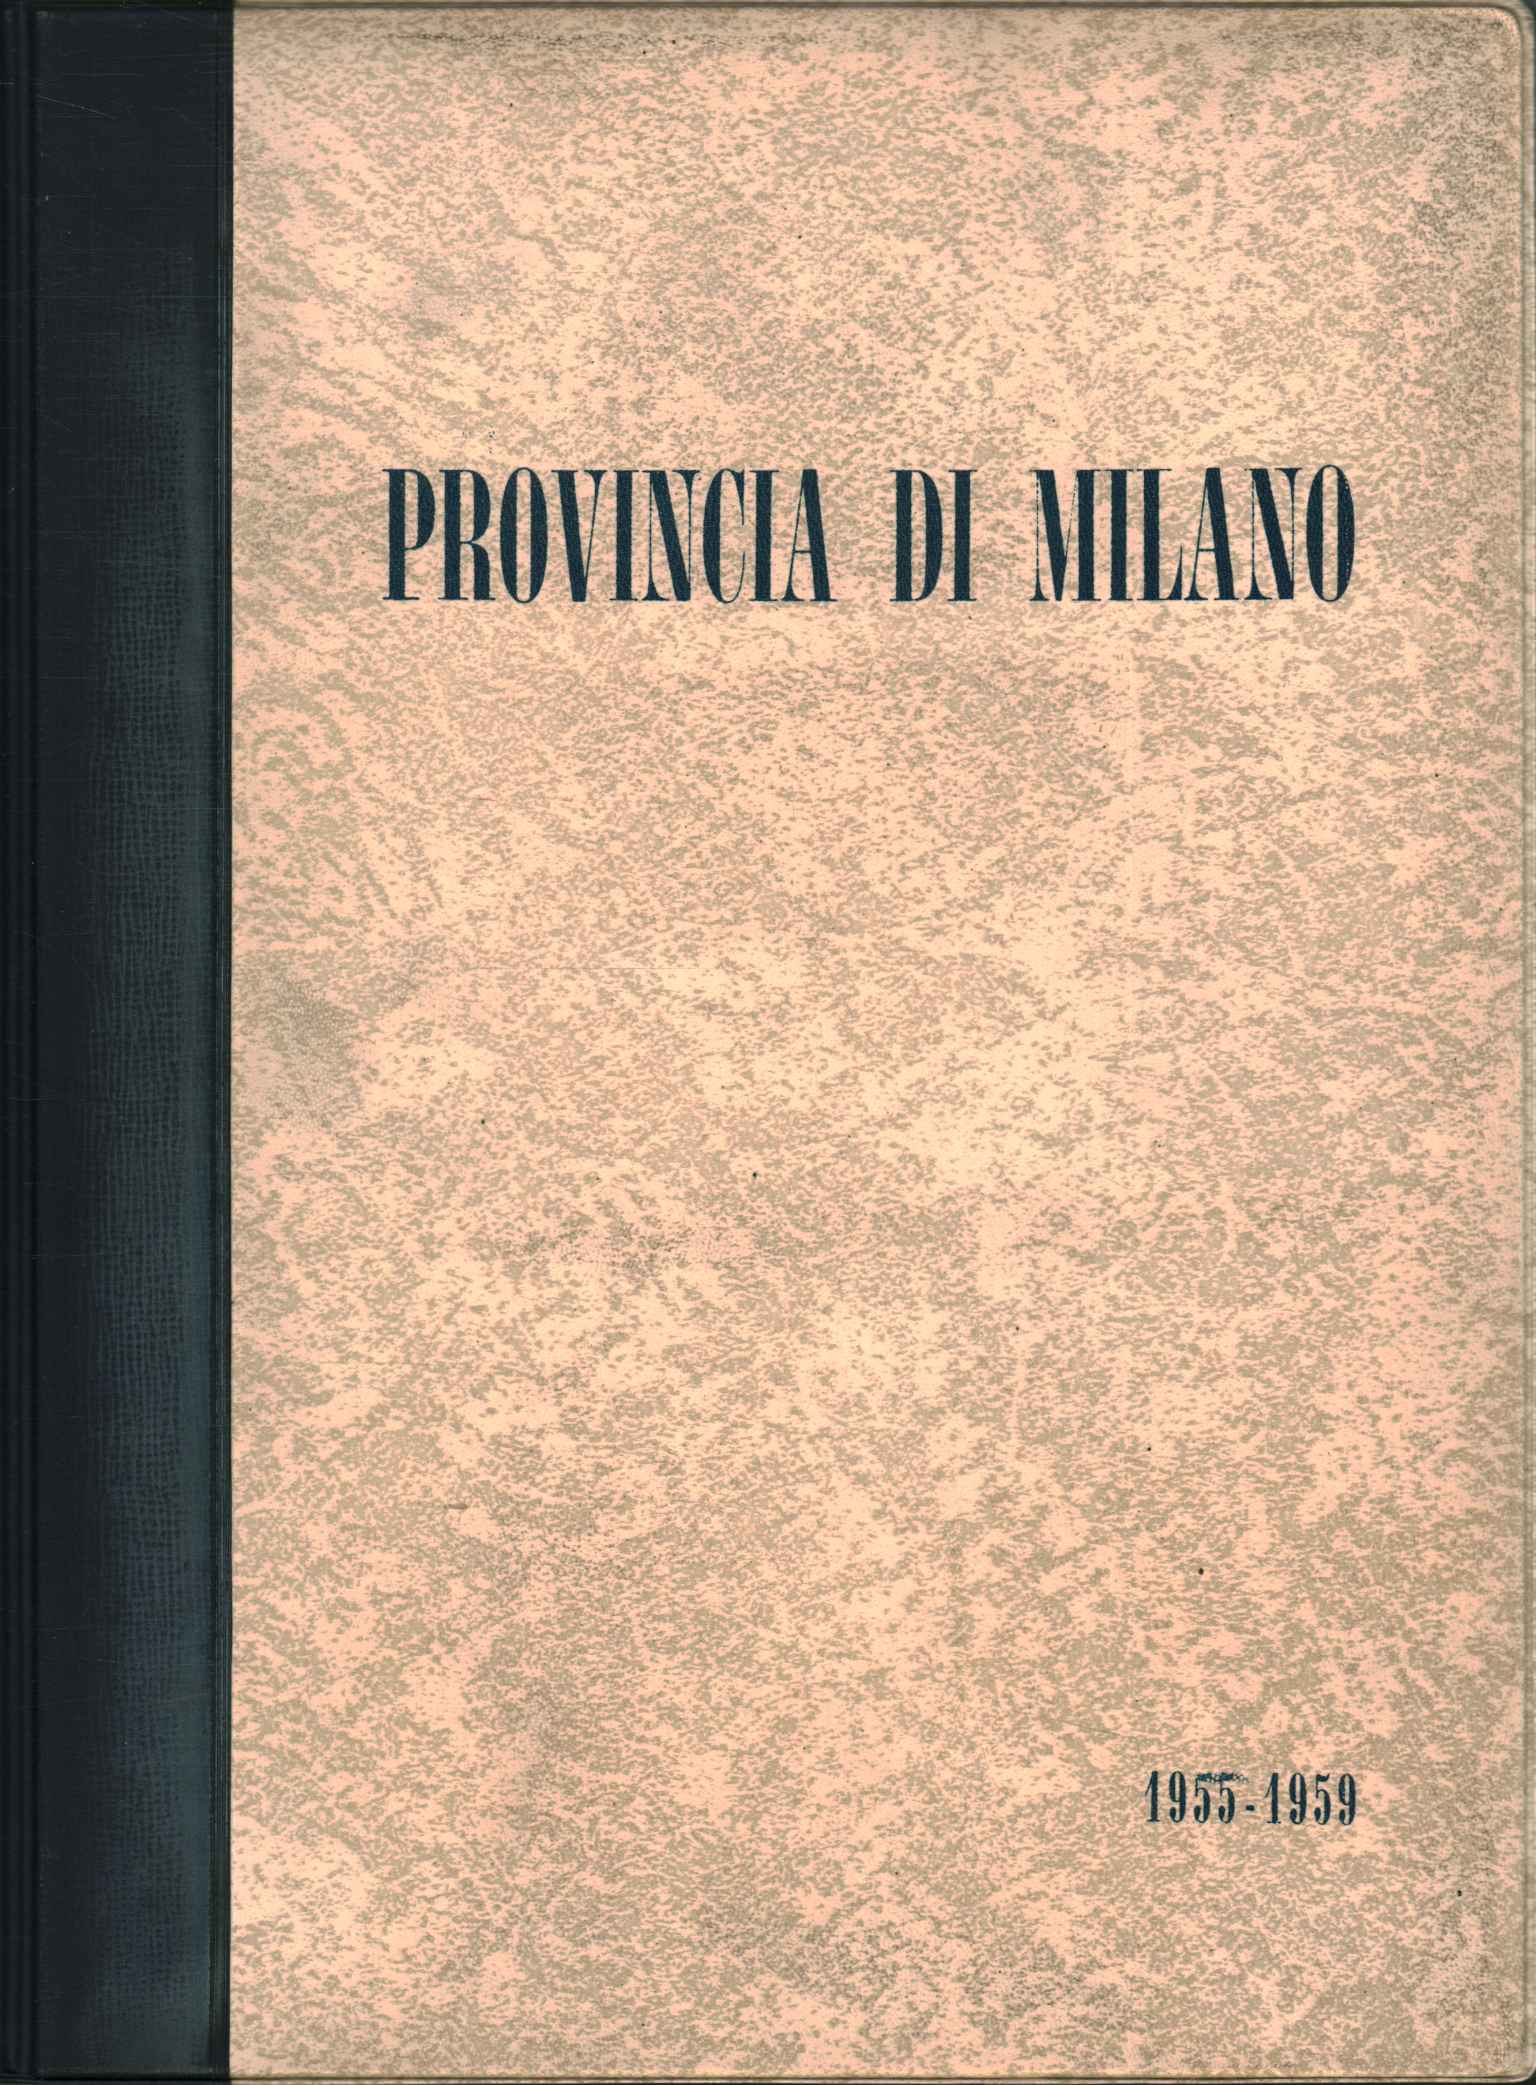 Provincia de Milán 1955-1959